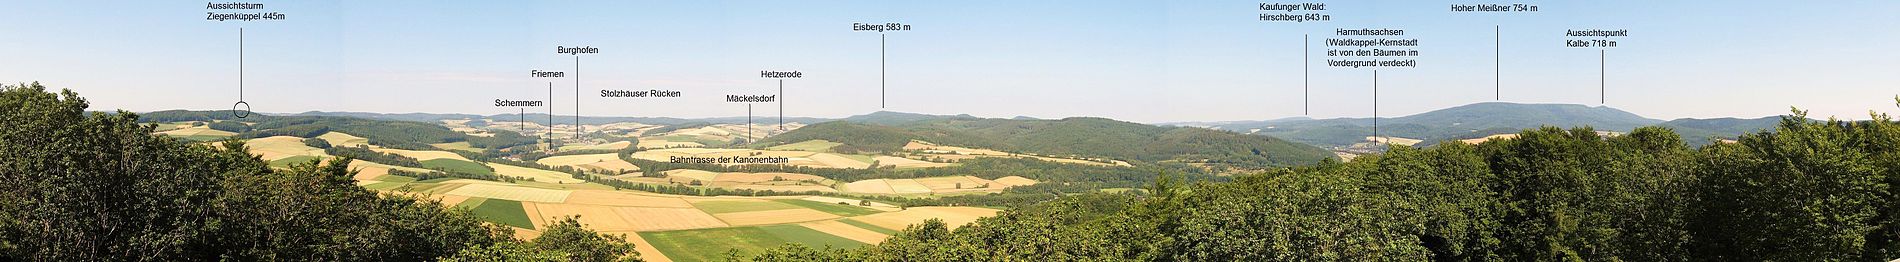 Mäuseberg bei Waldkappel (gehört zum Stadtgebiet): Panoramablick vom stählernen Aussichtsturm in den Schemmerngrund im Stölzinger Gebirge. Der höchste Berg des Stölzinger Gebirges, der 583 m hohe Eisberg ist in der Bildmitte zu sehen.